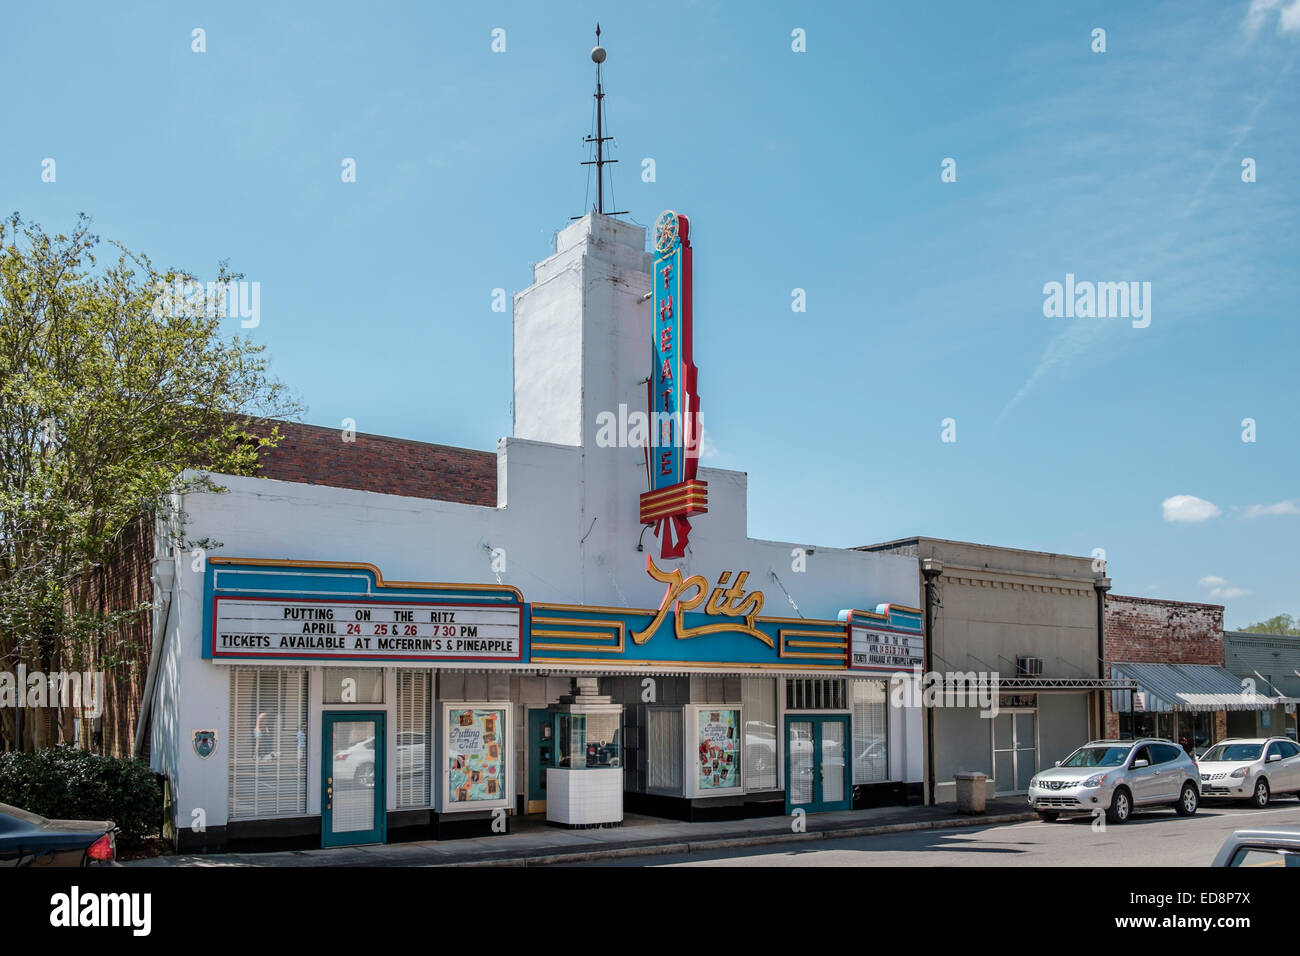 Ritz movie theater in Greenville, Alabama, Stati Uniti d'America che mostra l'architettura art deco degli anni trenta era movie theater. Foto Stock